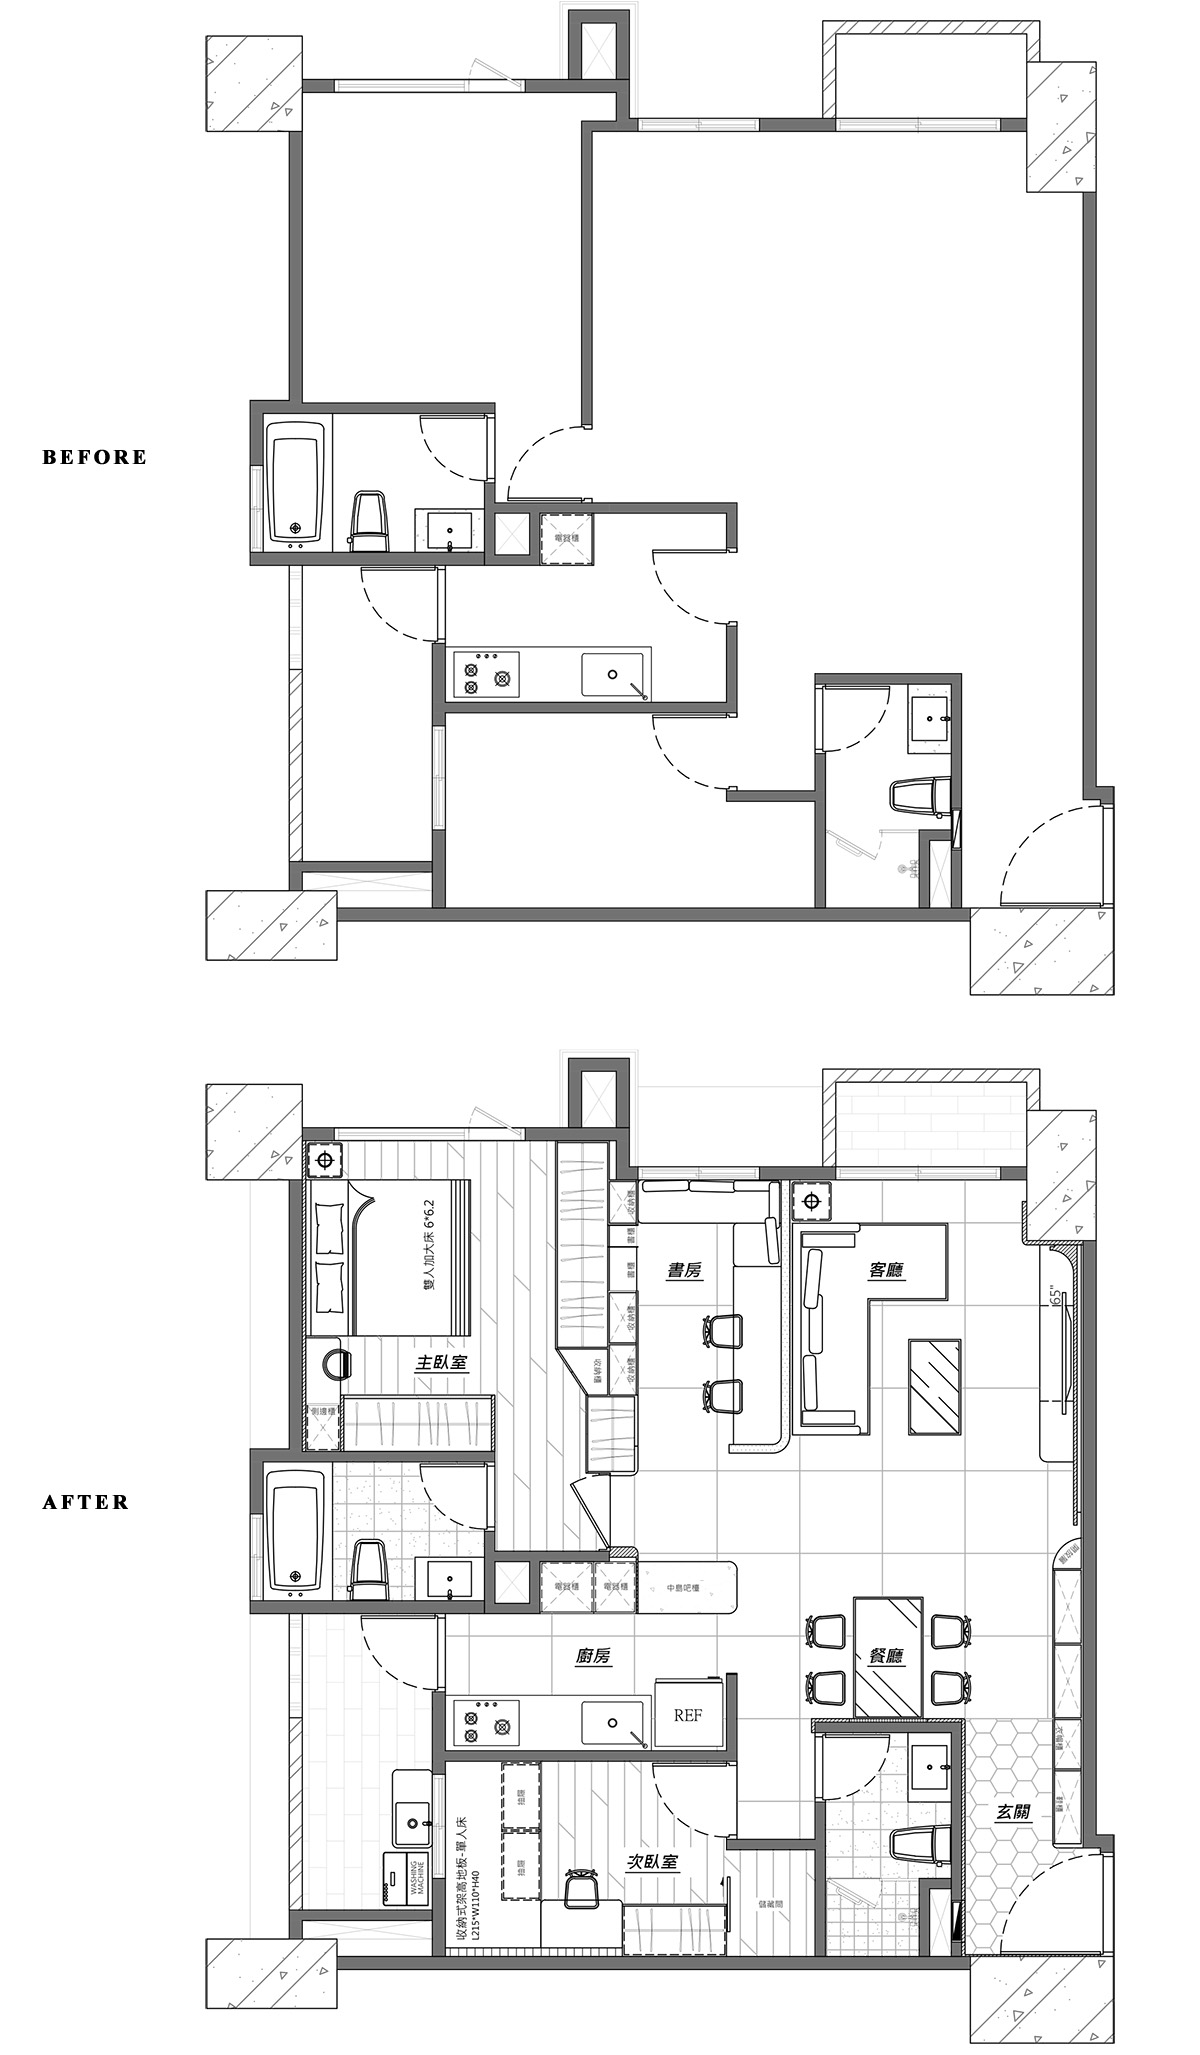 住宅设计,公寓设计,小户型设计,60㎡公寓设计,公寓设计案例,公寓设计方案,UC.enter,新北